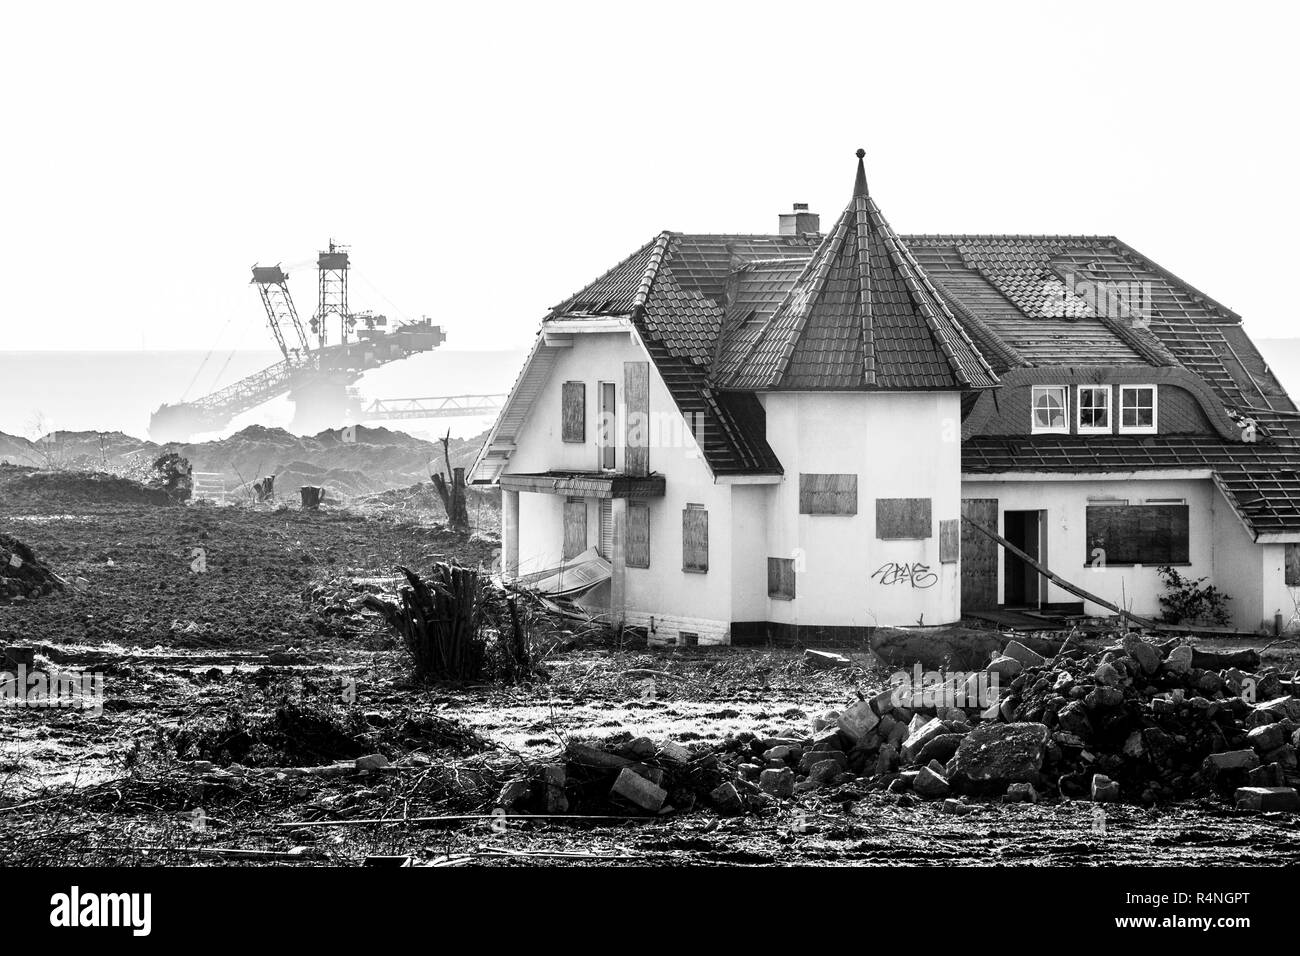 Ciudad abandonada de Borschemich, Alemania. El depósito de lignito en las aldeas de la región del Bajo Rin hace que los residentes abandonen sus propiedades y centro de vida Foto de stock